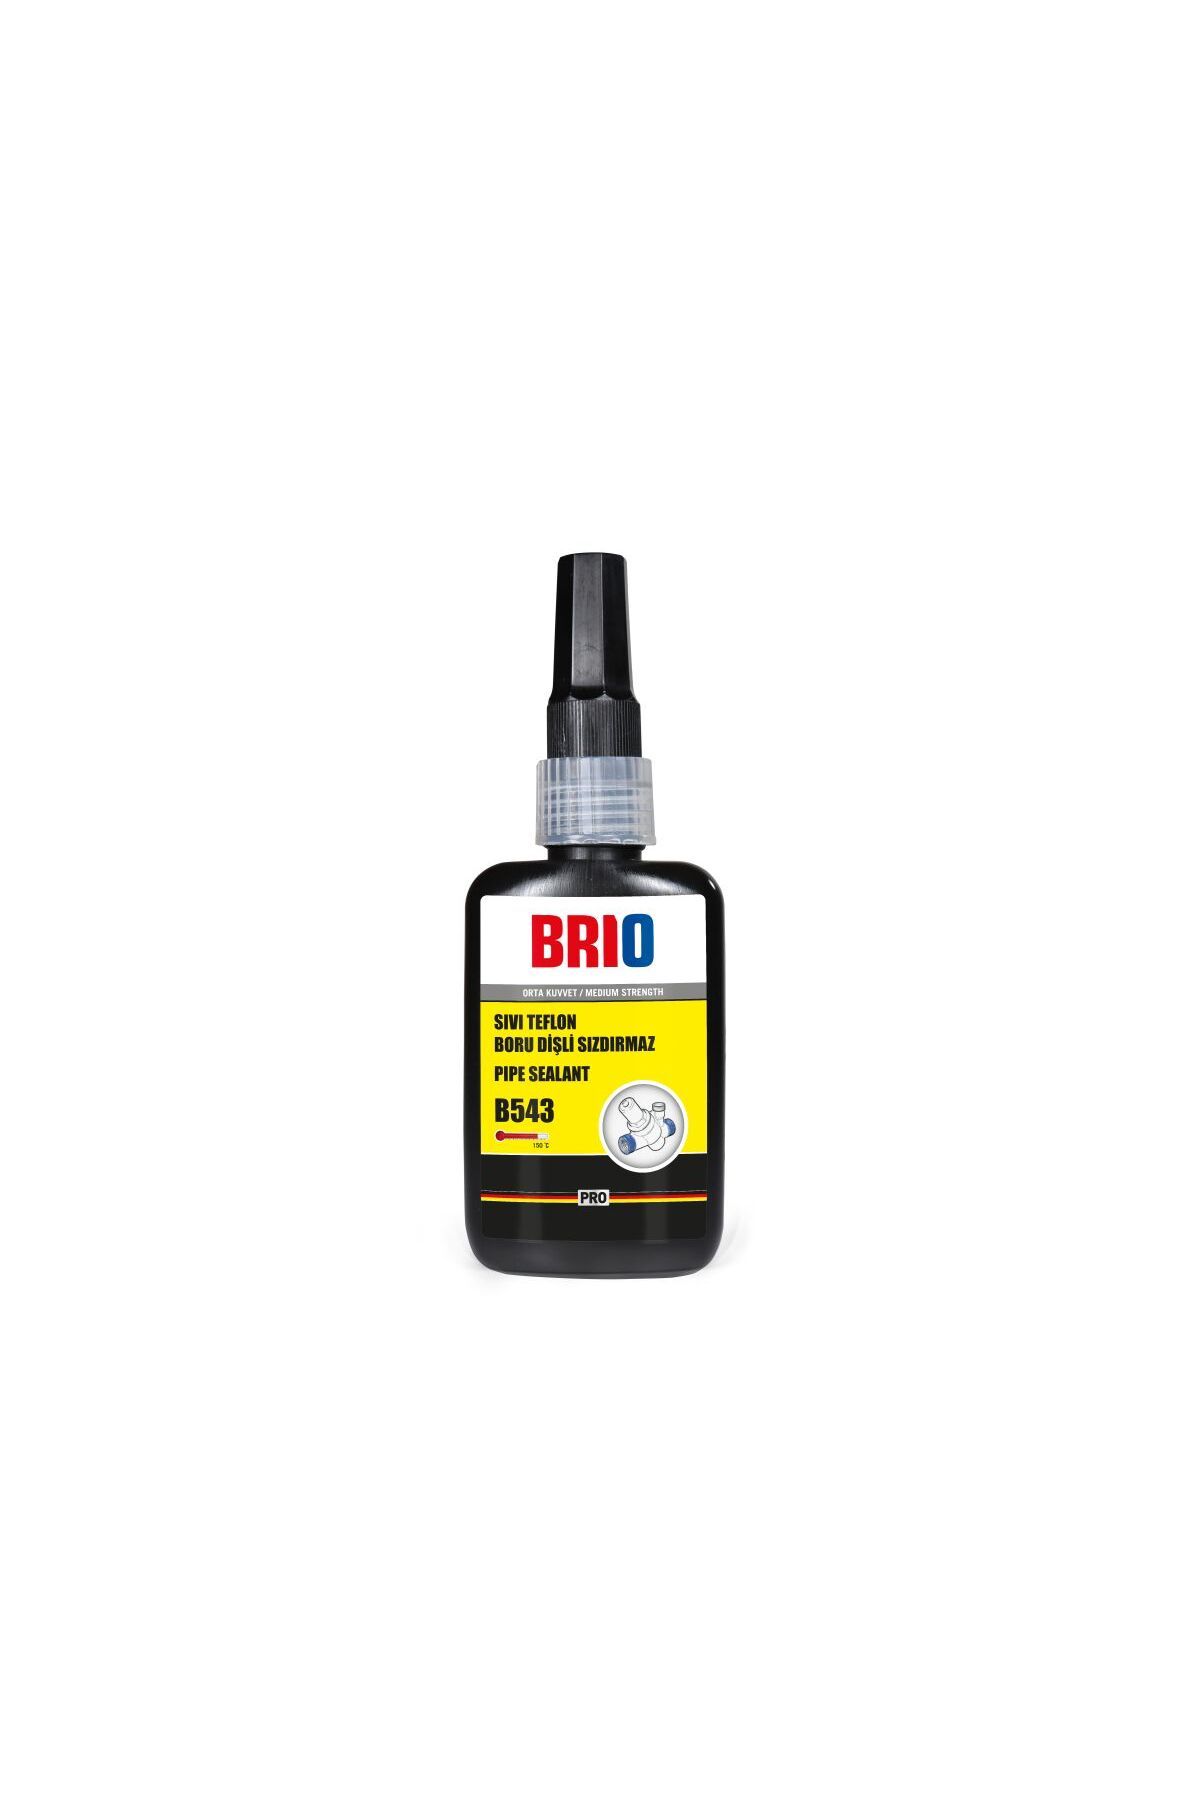 Brio Sıvı Teflon Boru Dişli Sızdırmaz 50 ml